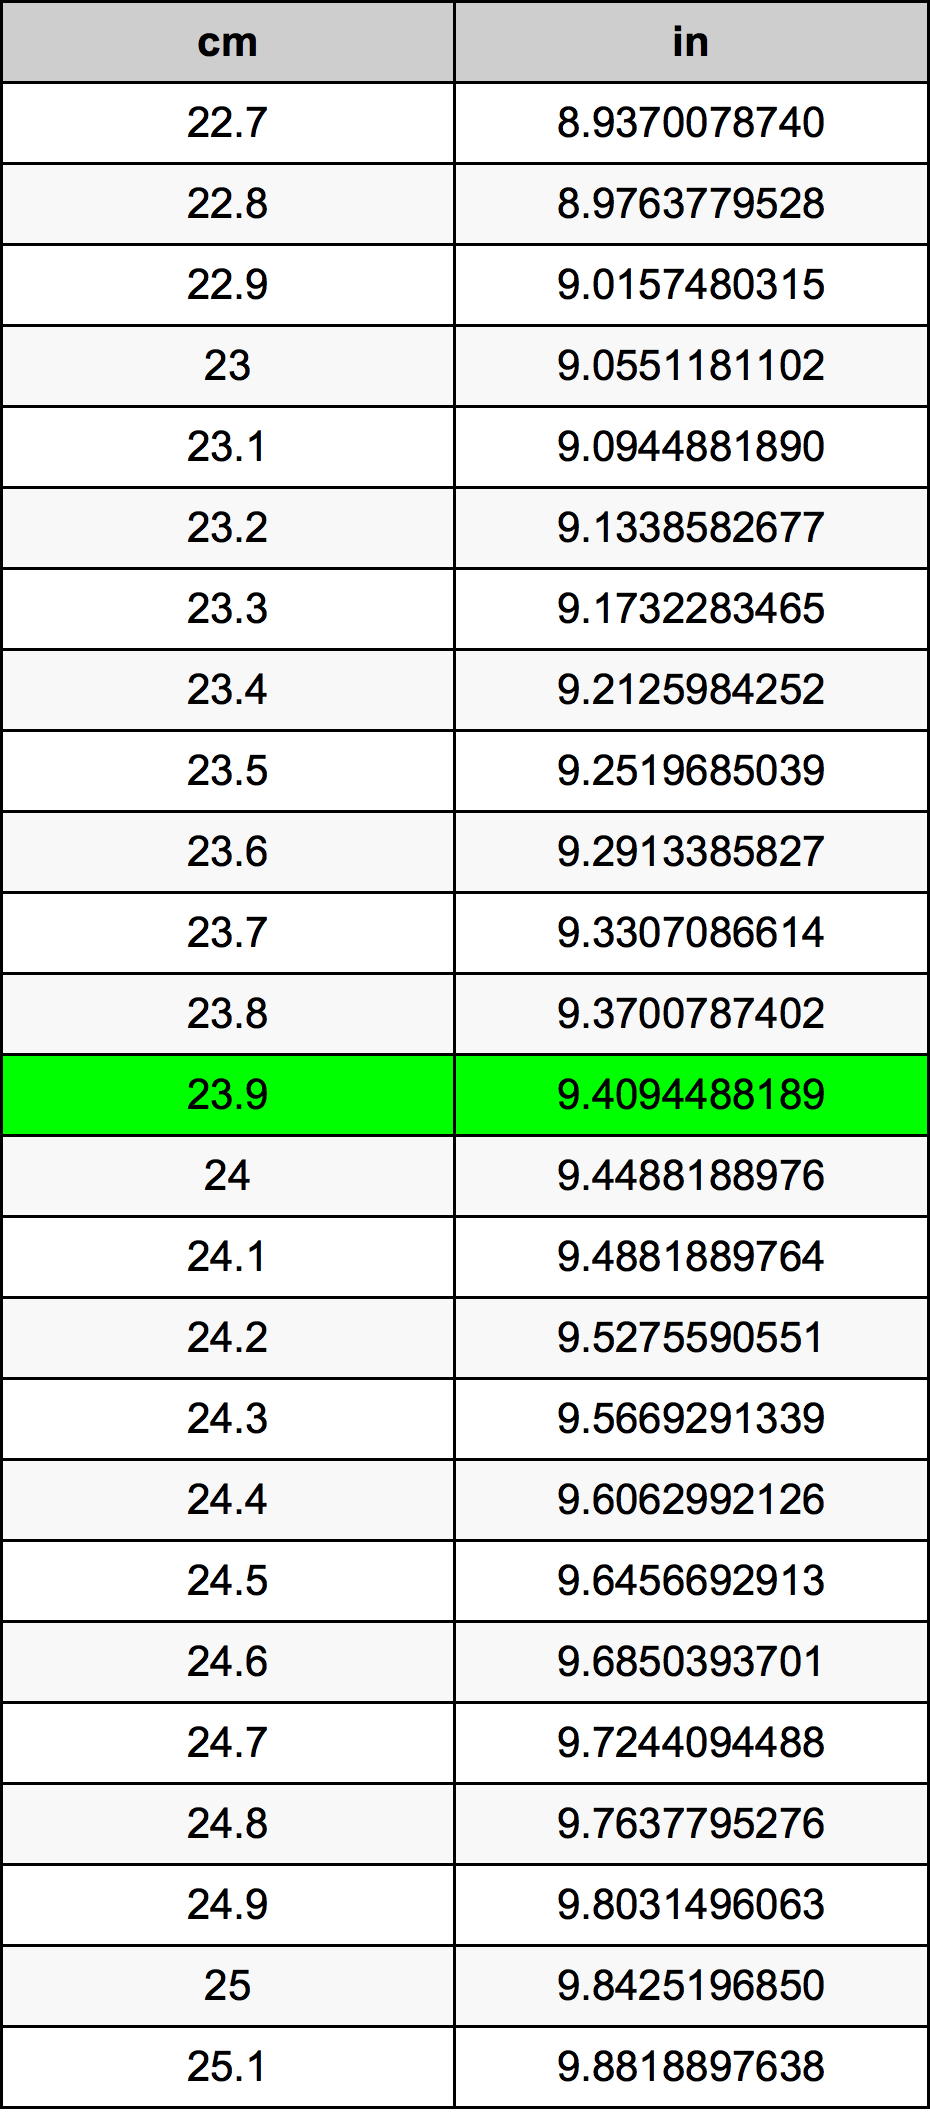 23.9 Centiméter átszámítási táblázat